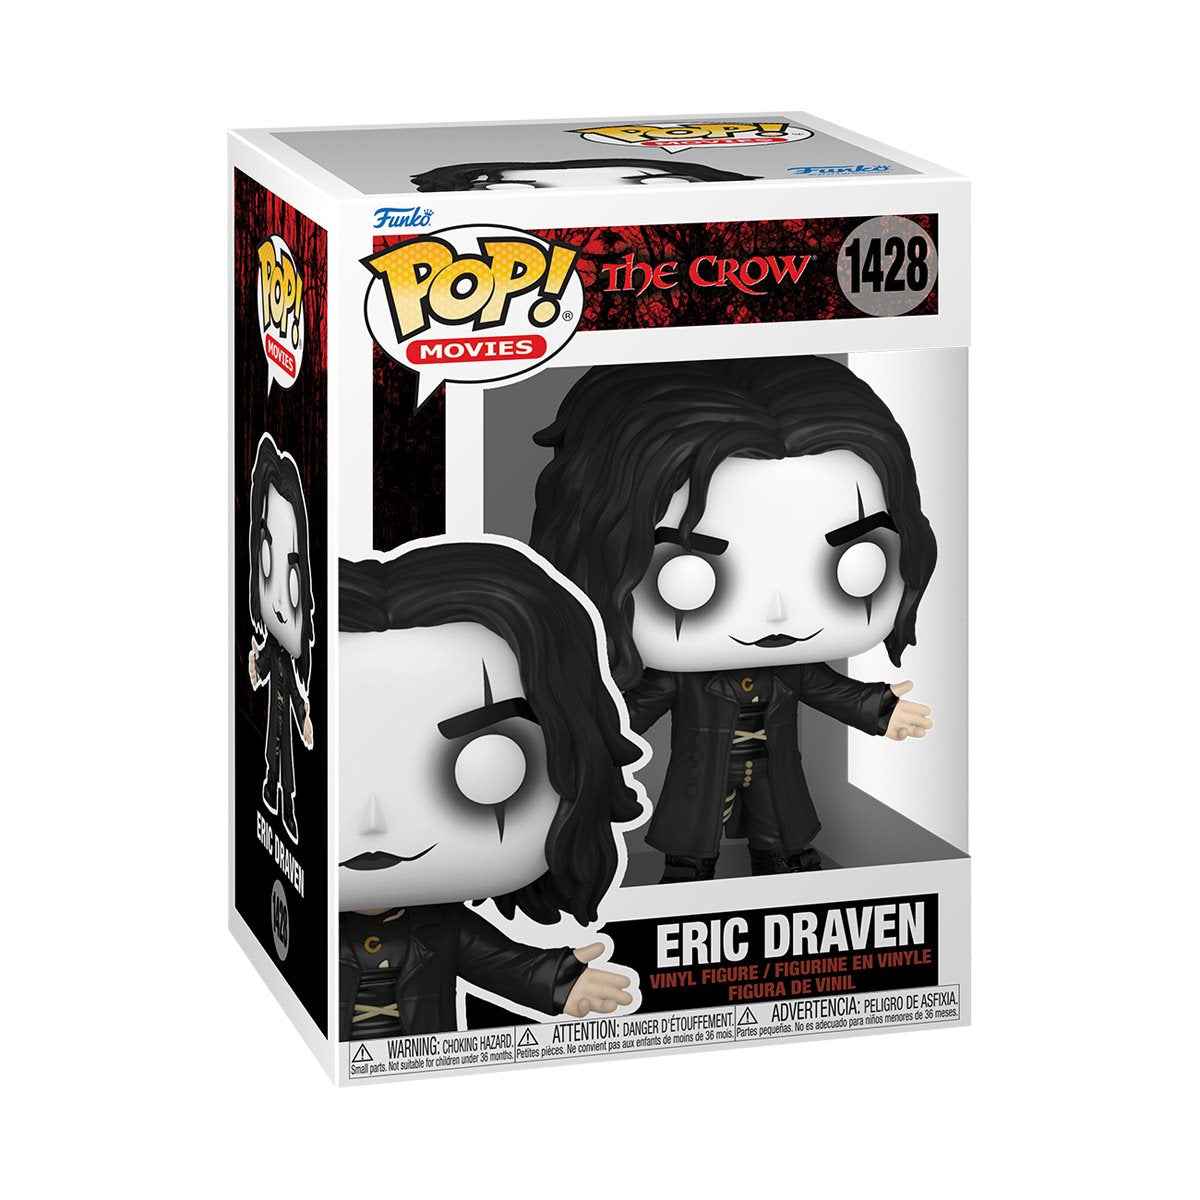 The Crow Eric Draven Funko Pop! Vinyl Figure